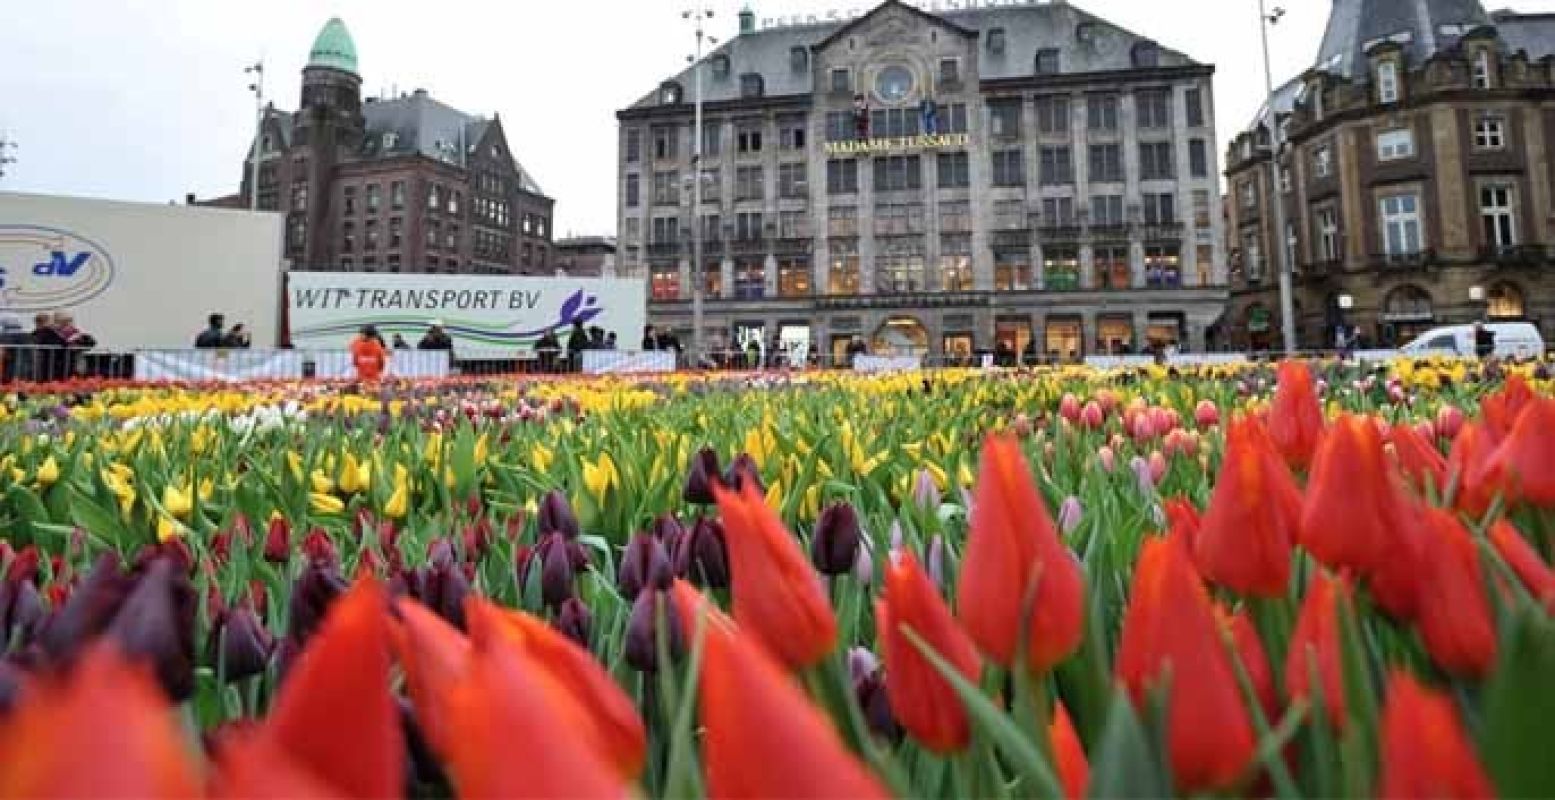 De pluktuin bestaat uit 200.000 tulpen. Foto: Stichting Tulpenpromotie Nederland